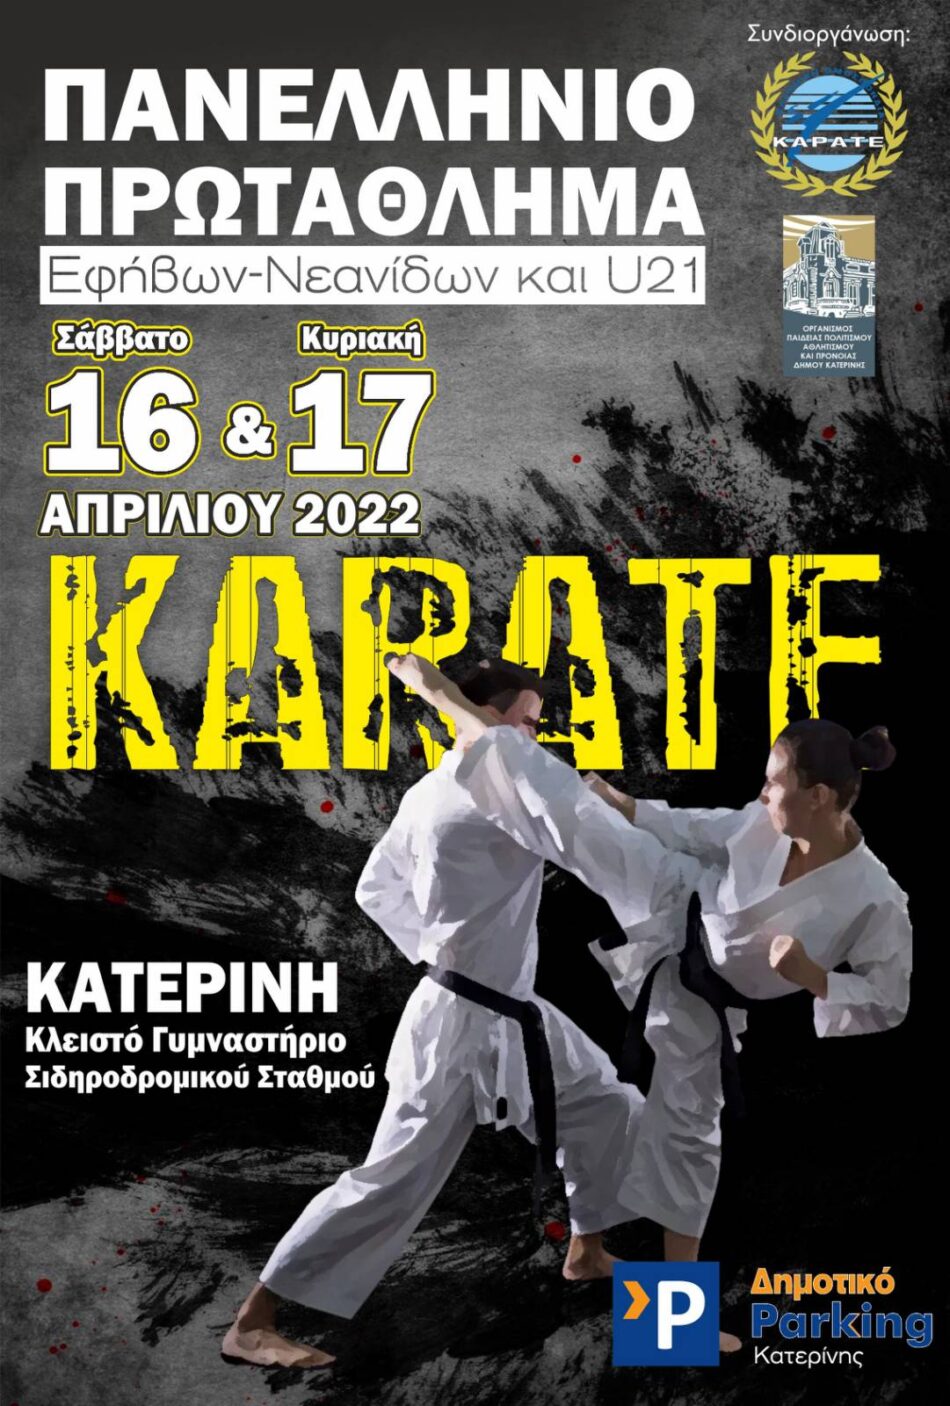 Στην Κατερίνη το Πανελλήνιο Πρωτάθλημα Καράτε Εφήβων-Νεανίδων και U21                                                                                      950x1406